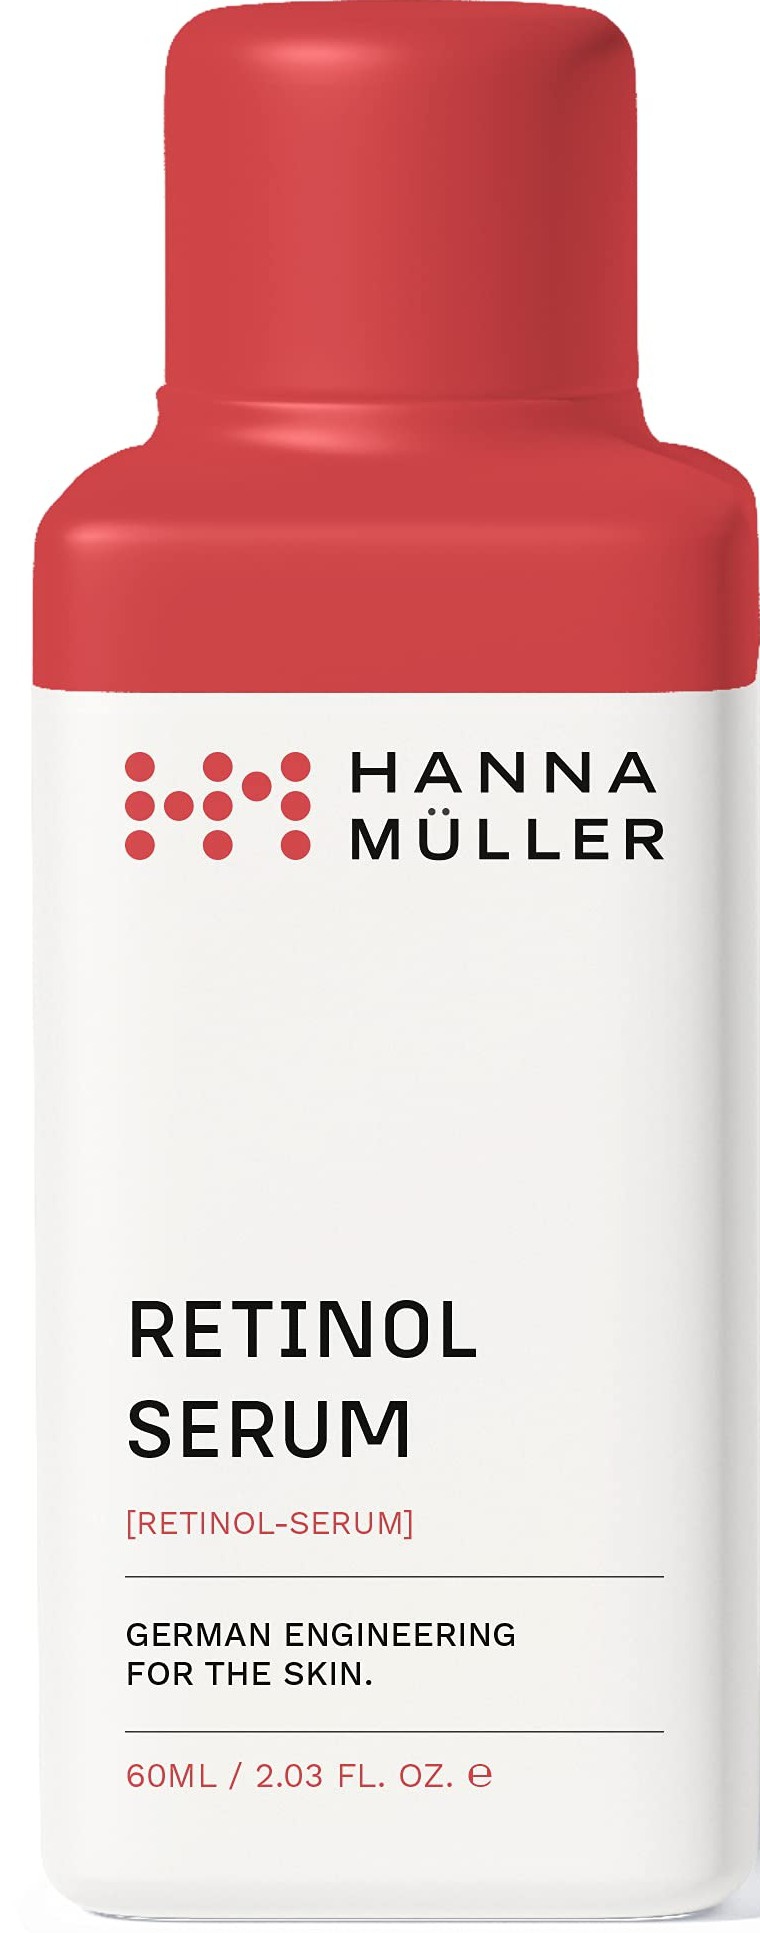 Hanna Muller Retinol Serum